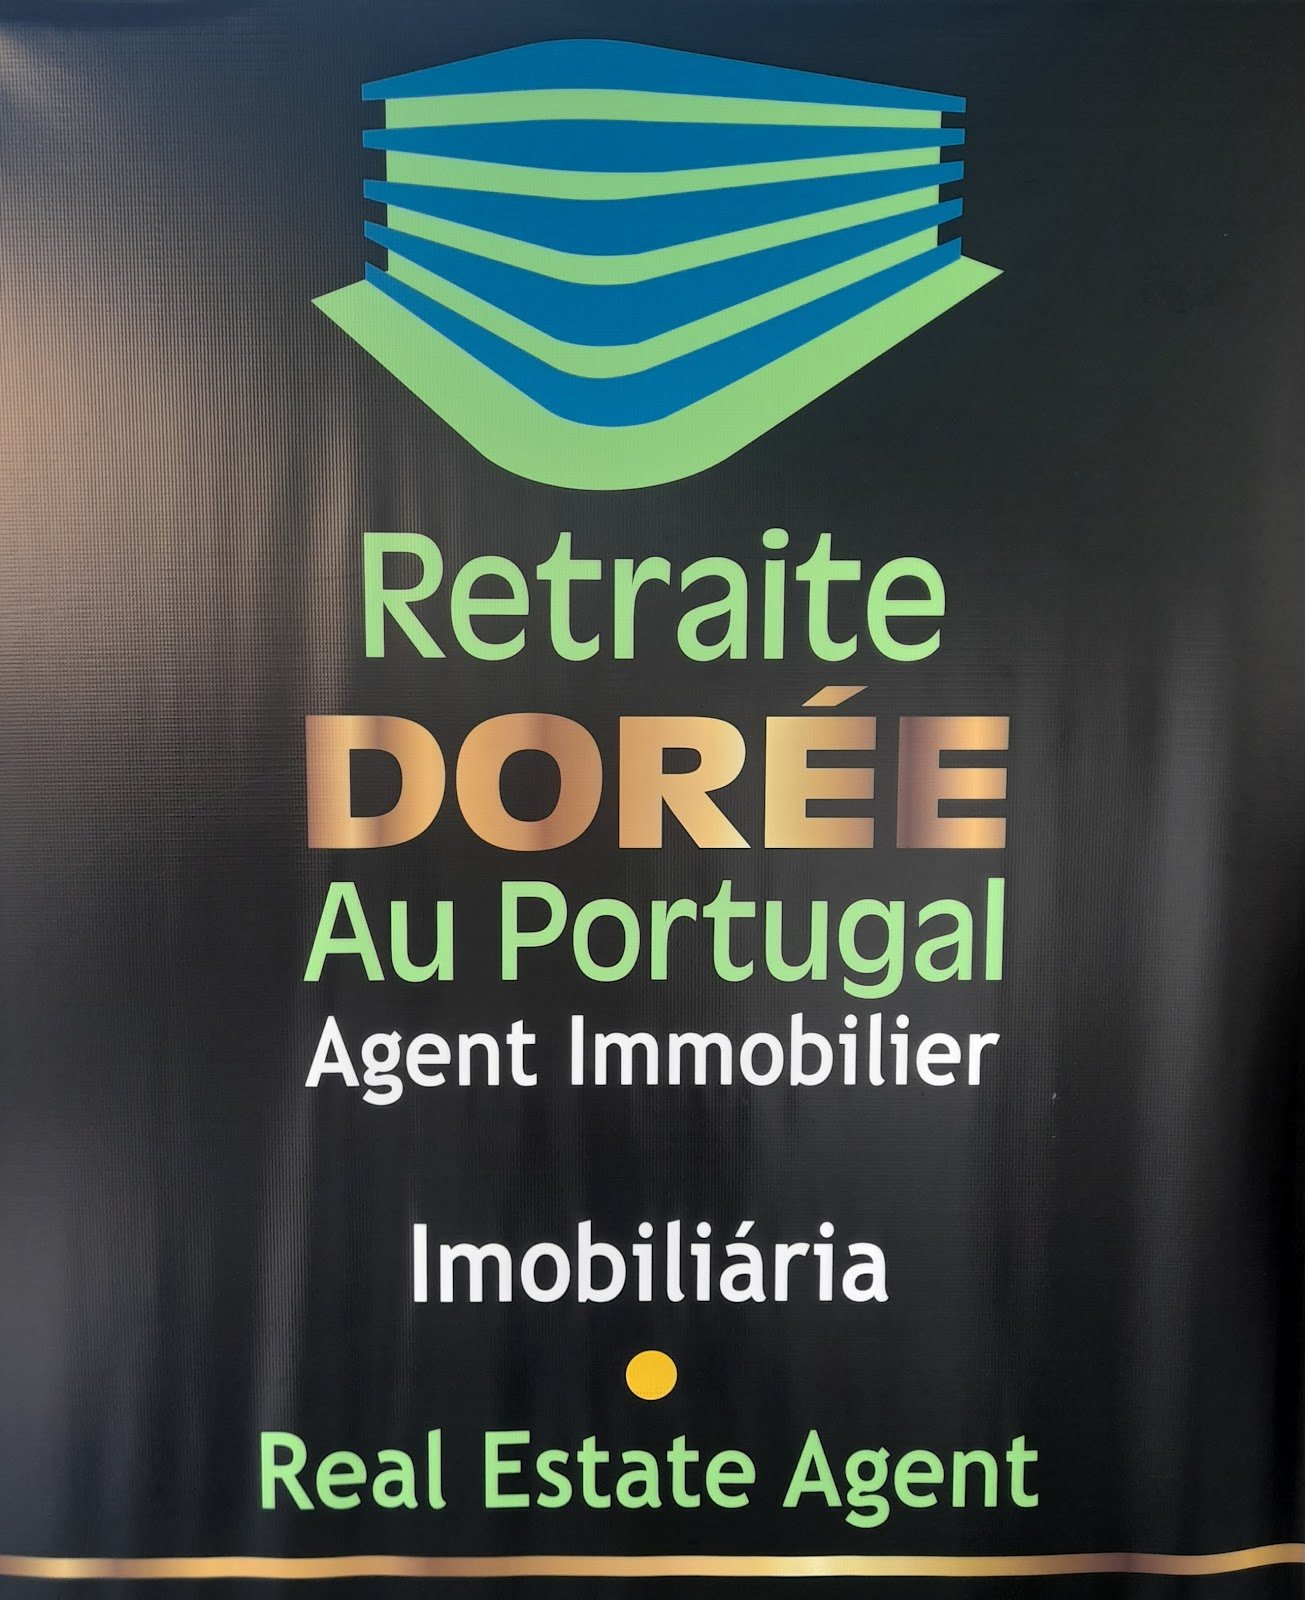  PalSul-Grupo Retraite Doreé Au Portugal - Agent Contact